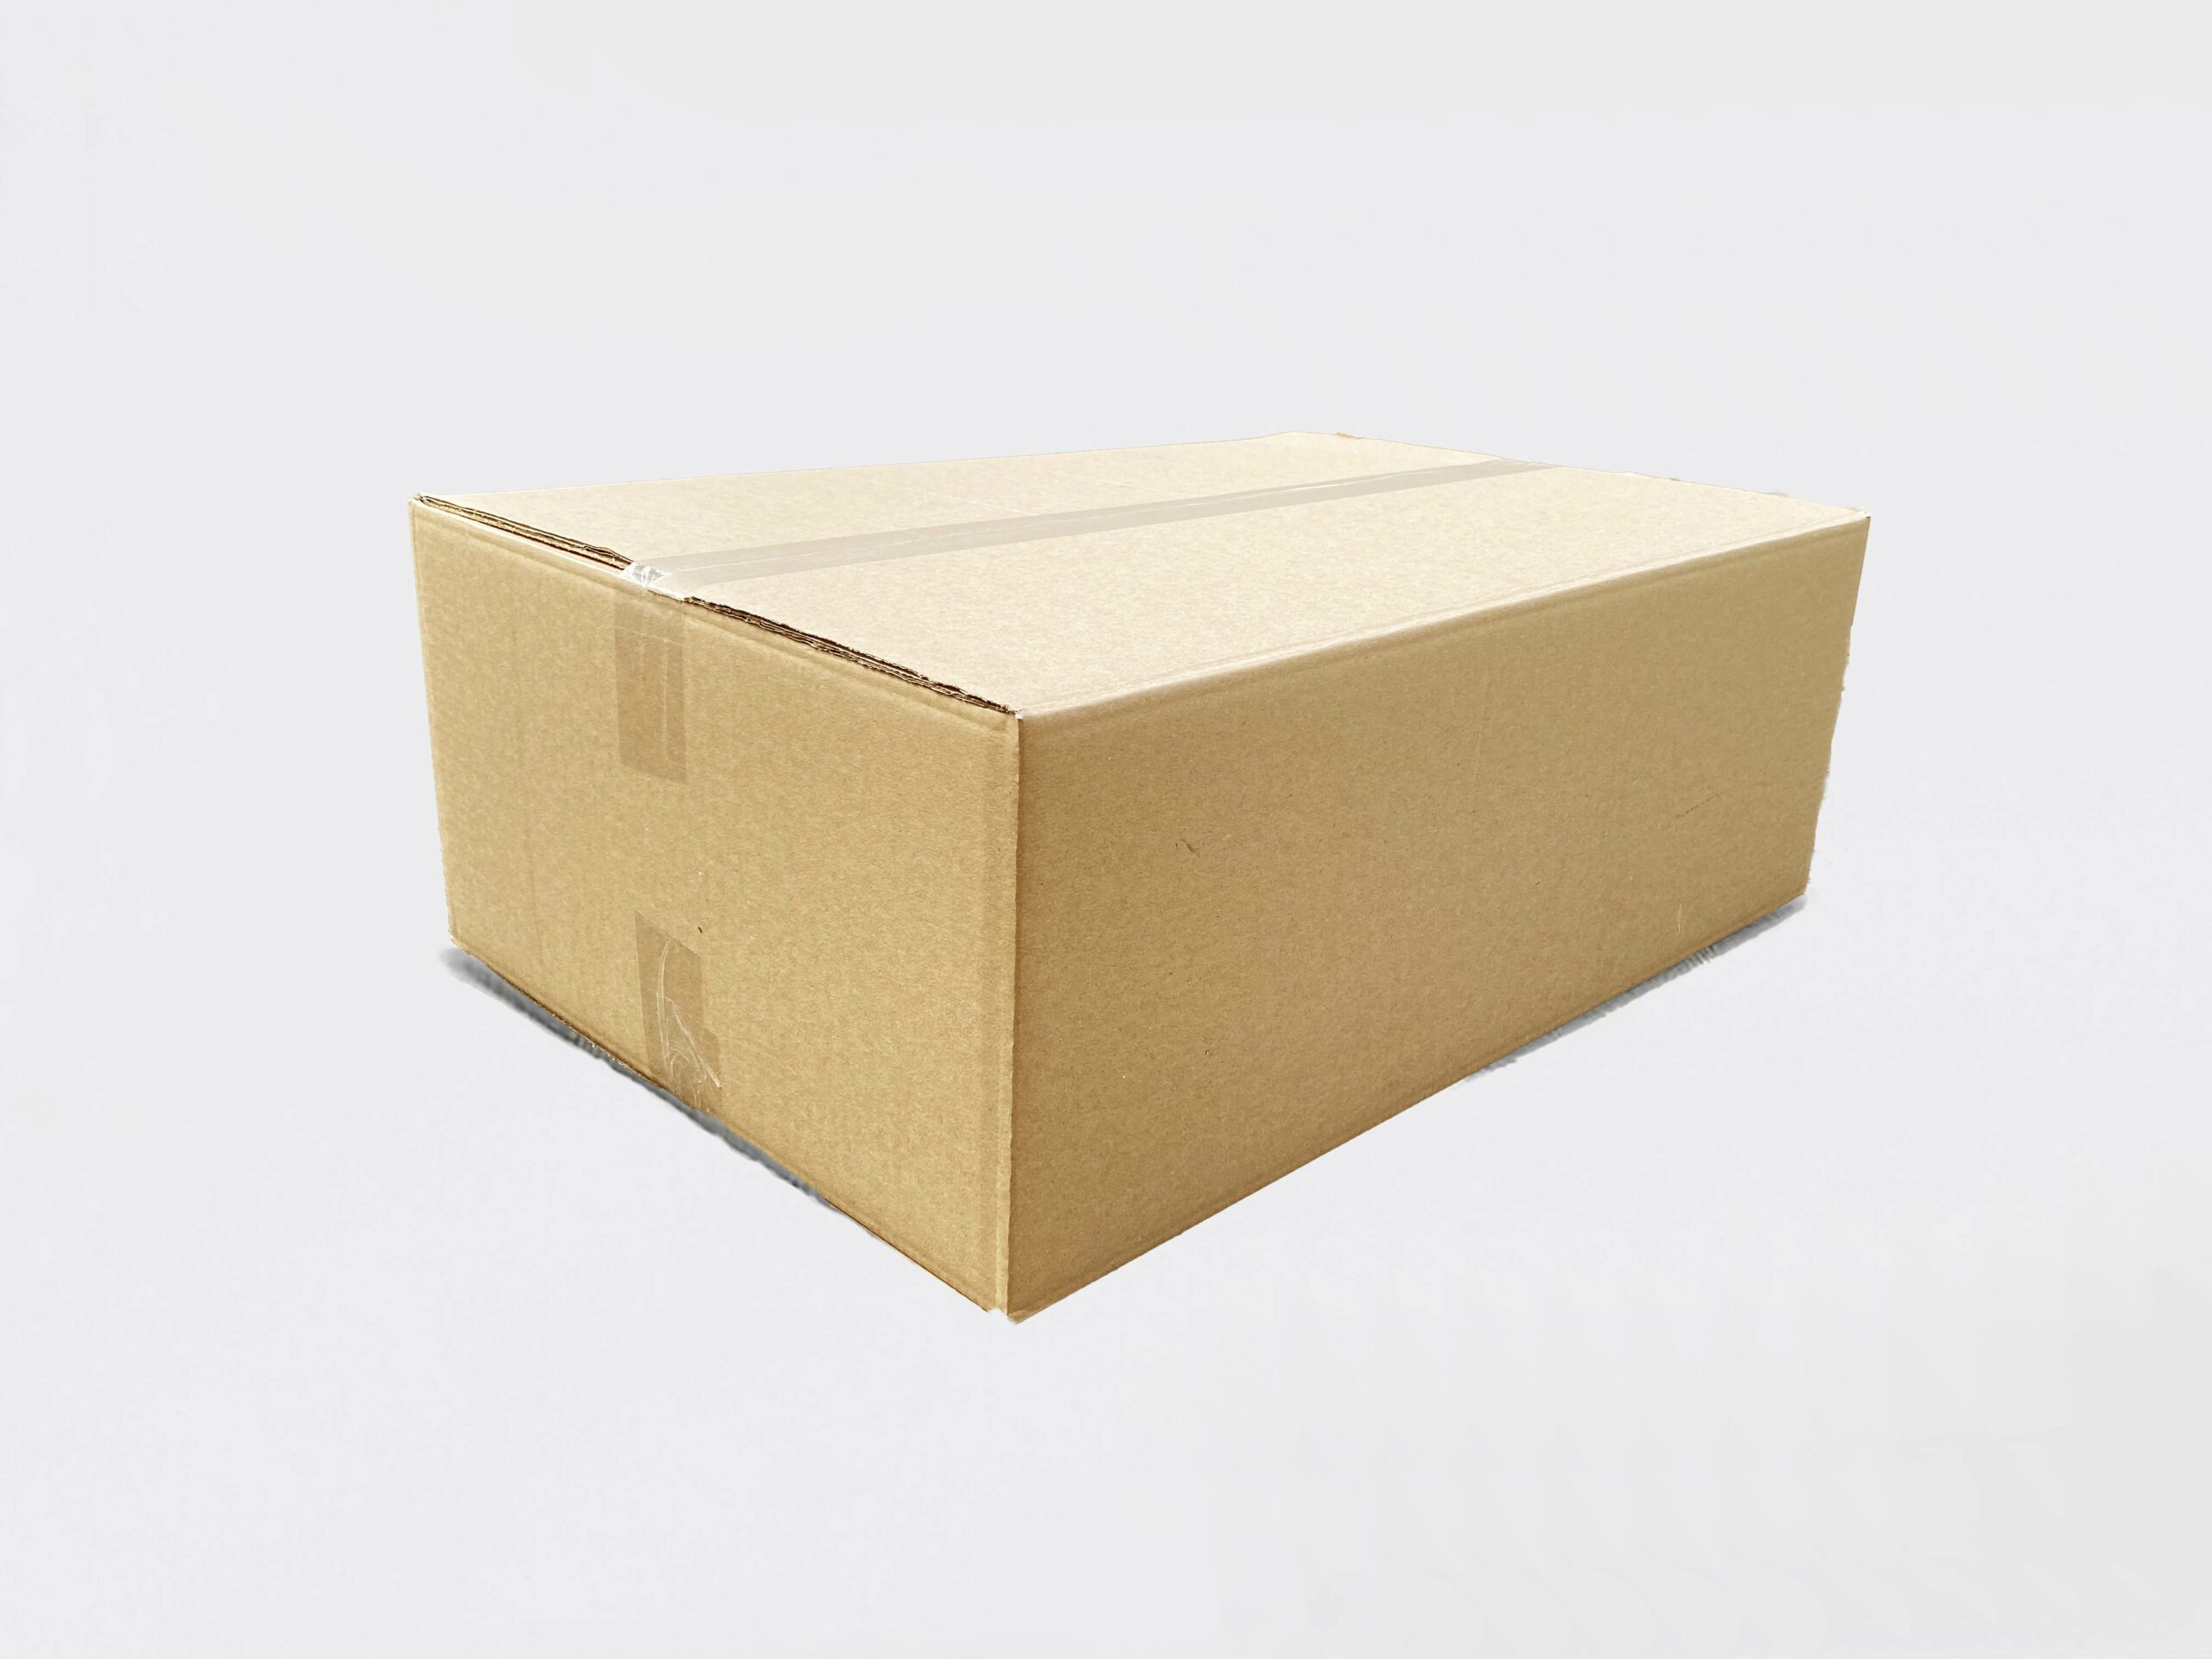 Caisse carton déménagement IMP. 1 COULEUR 545 x 345 x 300mm